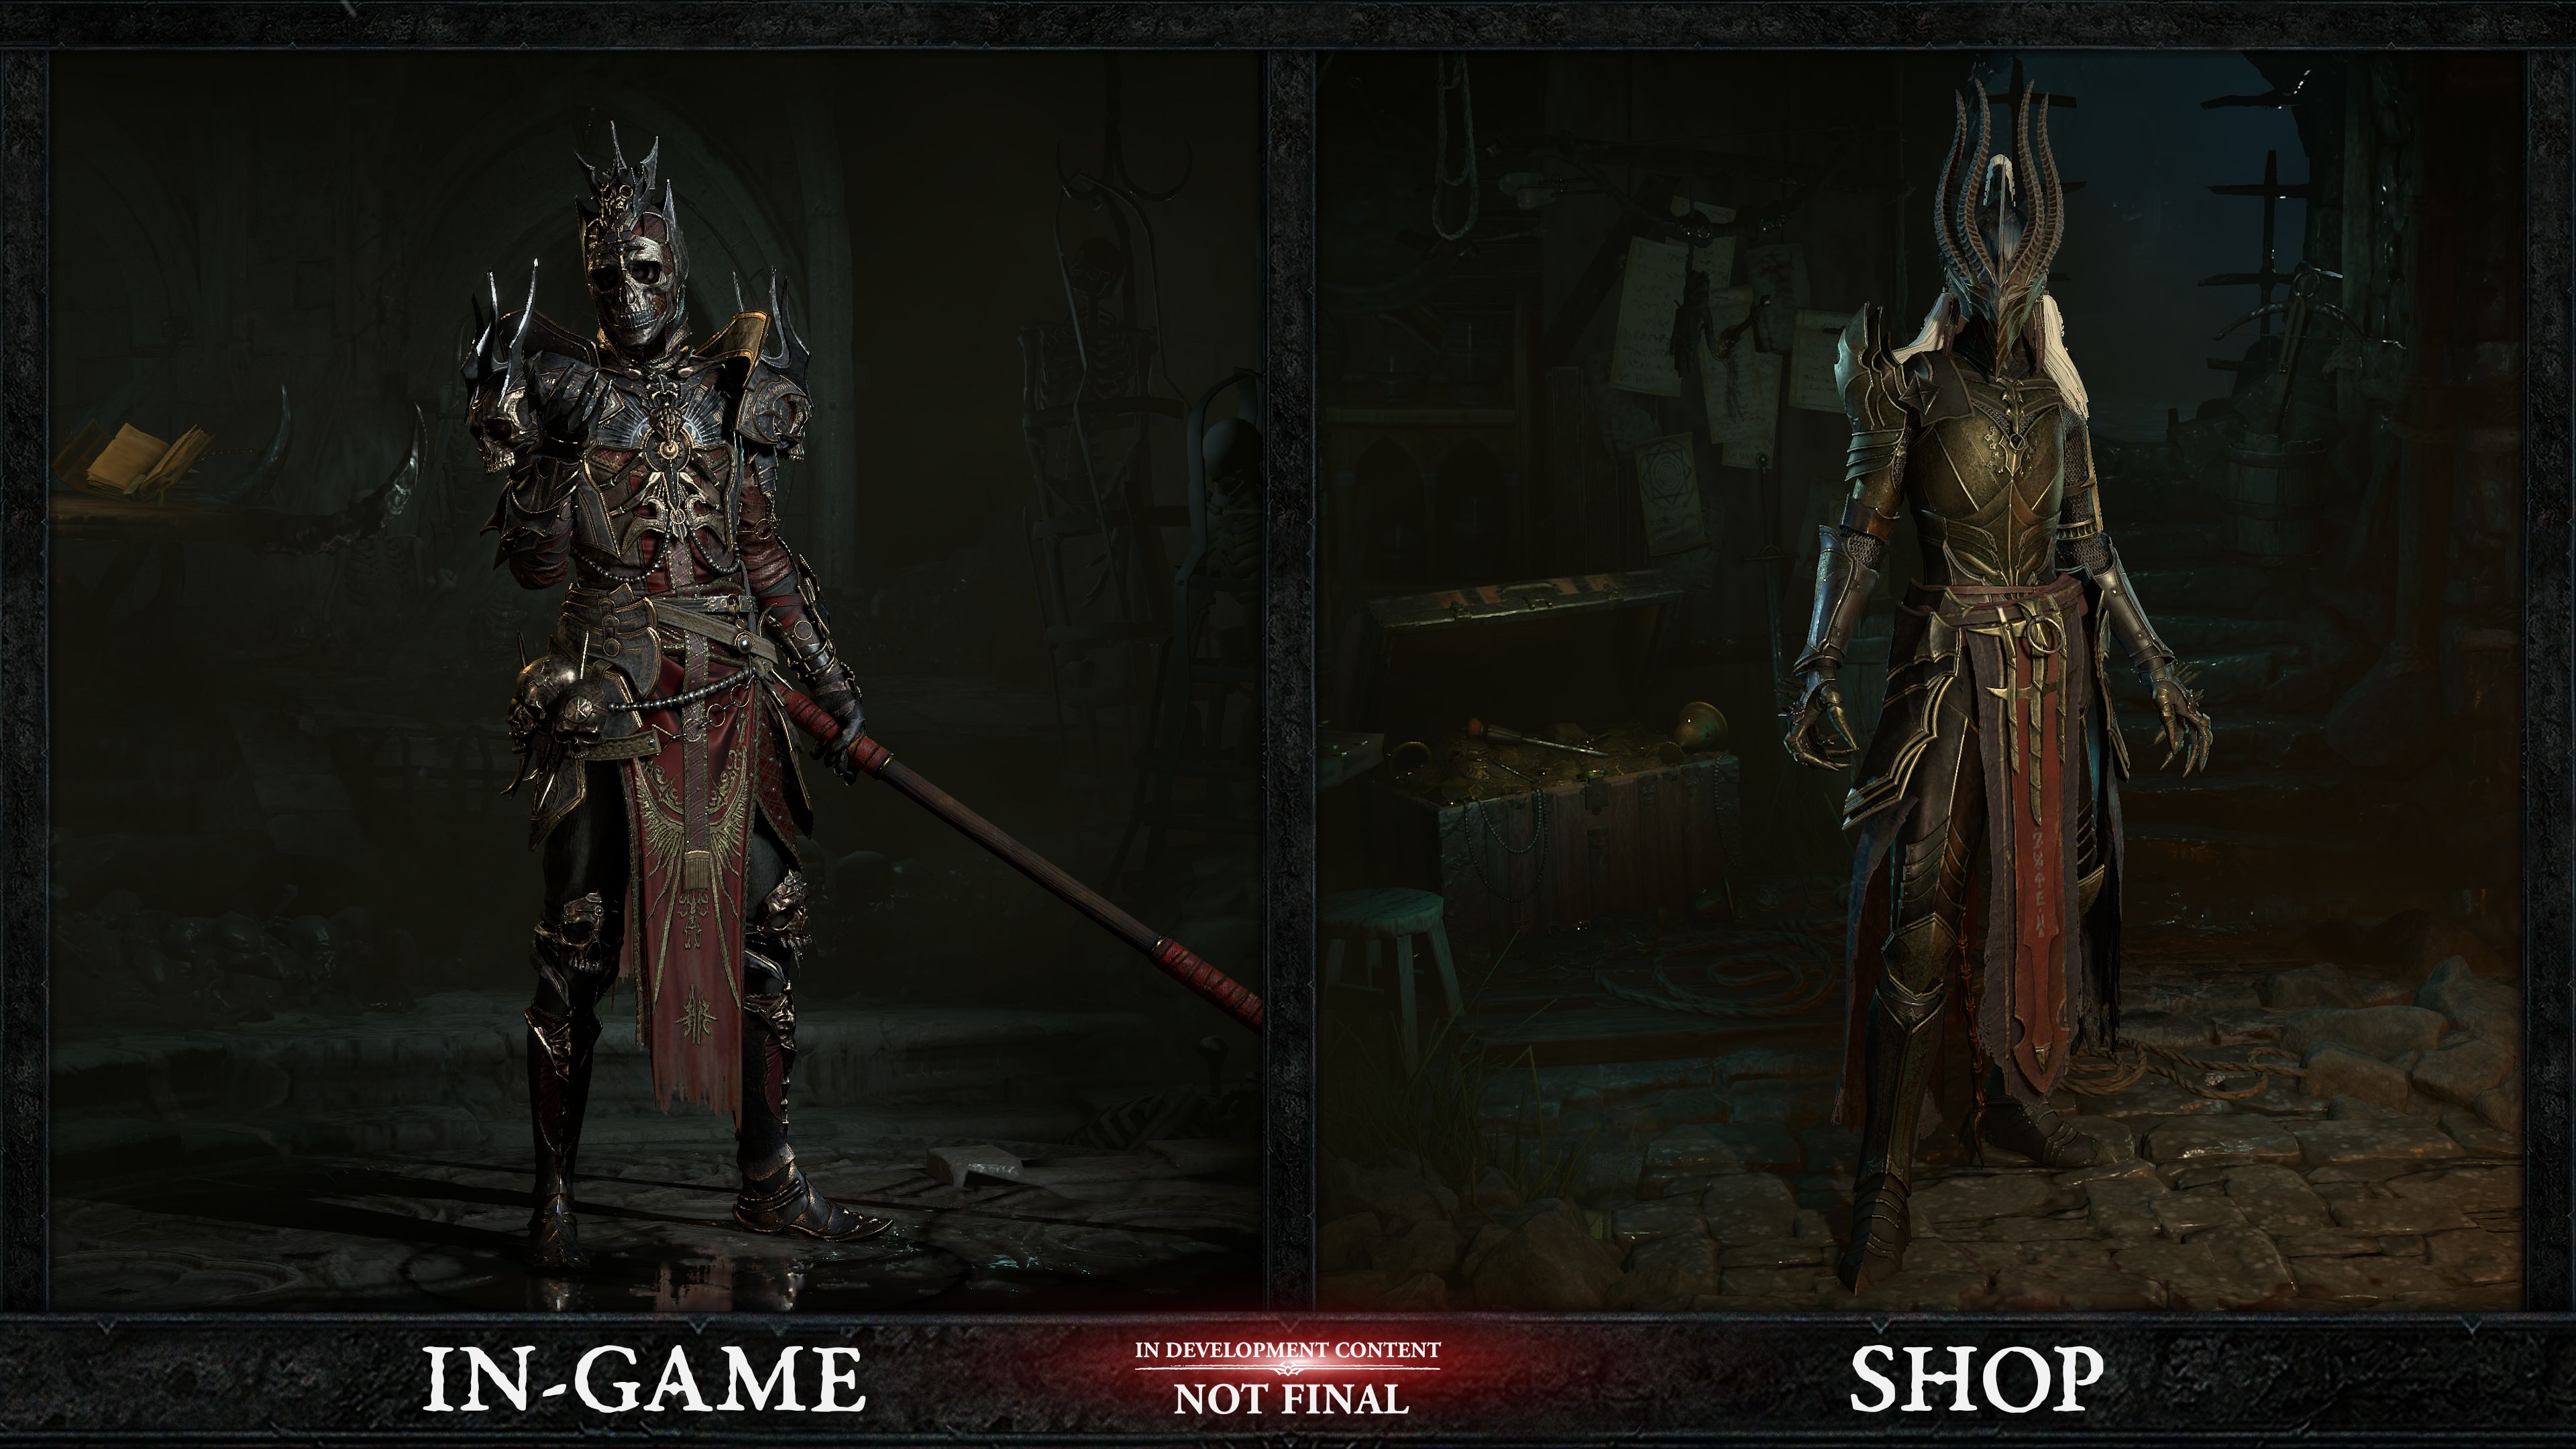 Diablo 4 shop vs game comparison image